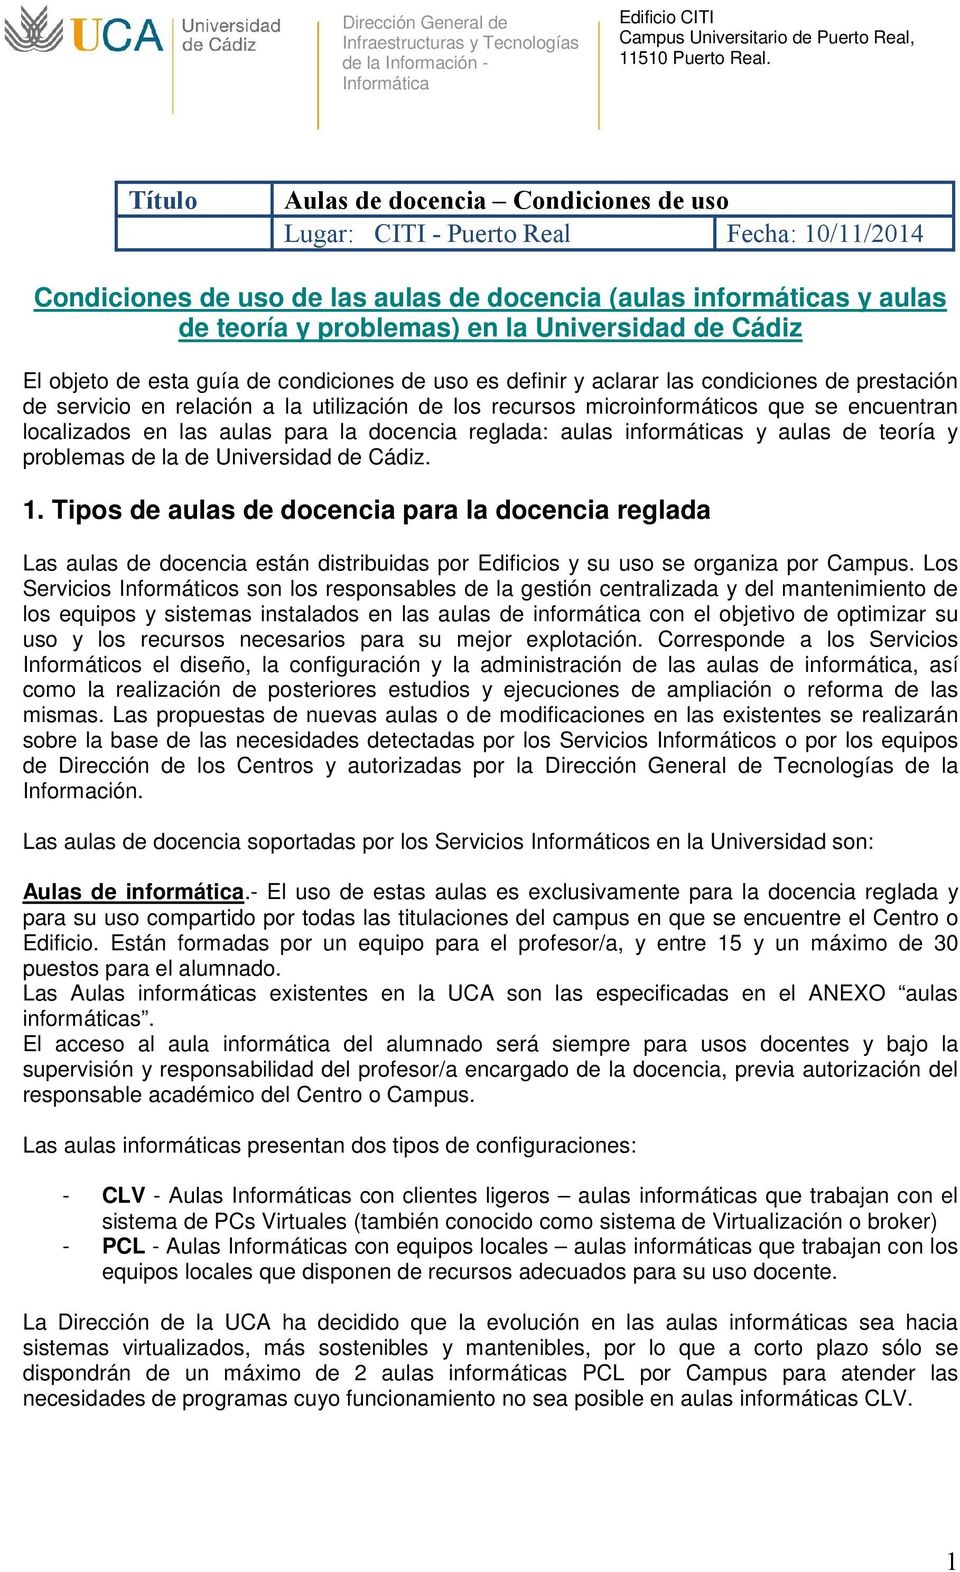 Universidad de Cádiz El objeto de esta guía de condiciones de uso es definir y aclarar las condiciones de prestación de servicio en relación a la utilización de los recursos microinformáticos que se